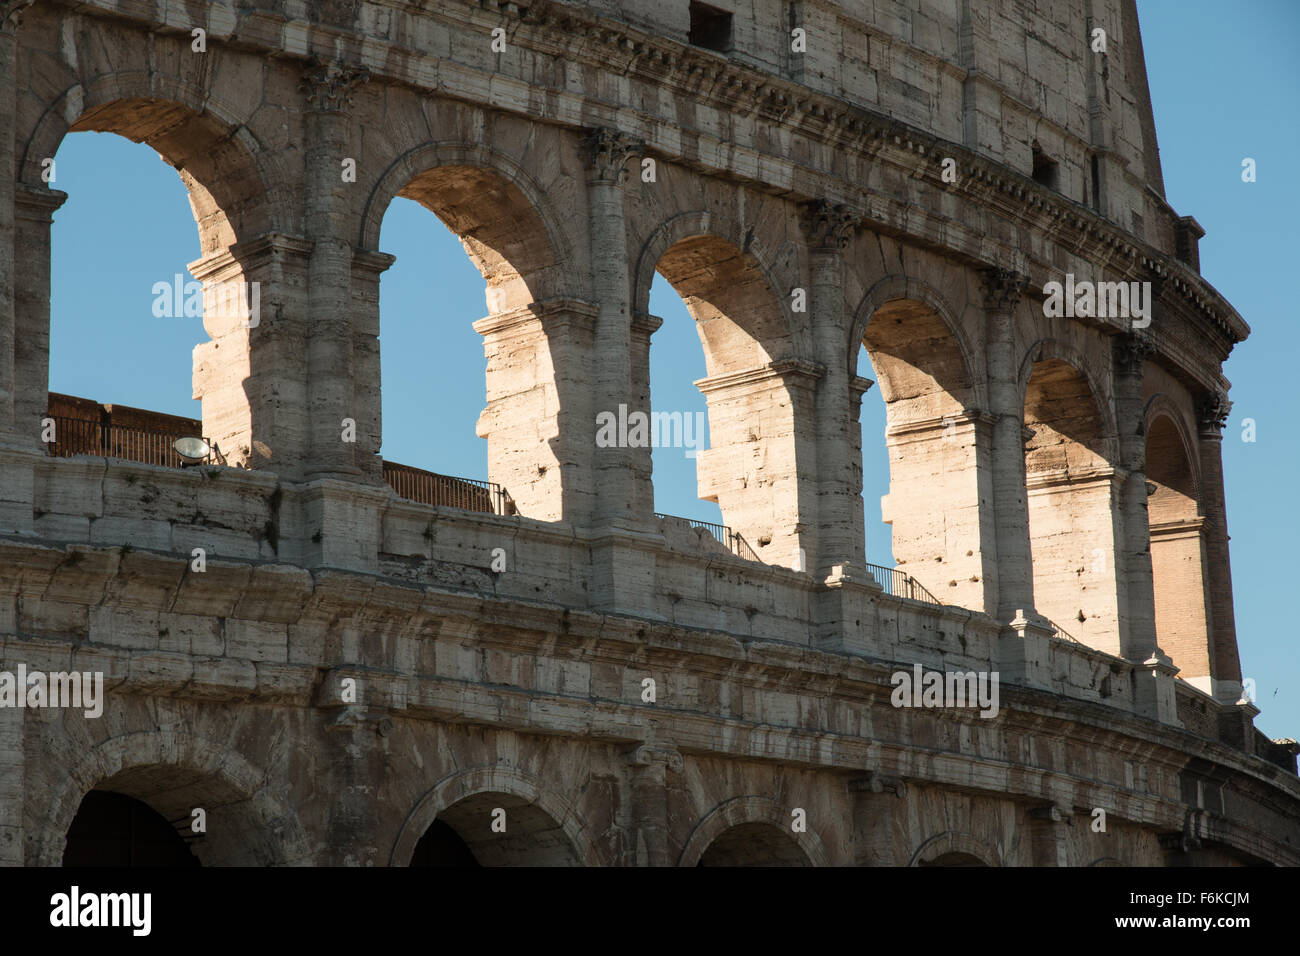 Coliseum, Rome, Italy Stock Photo